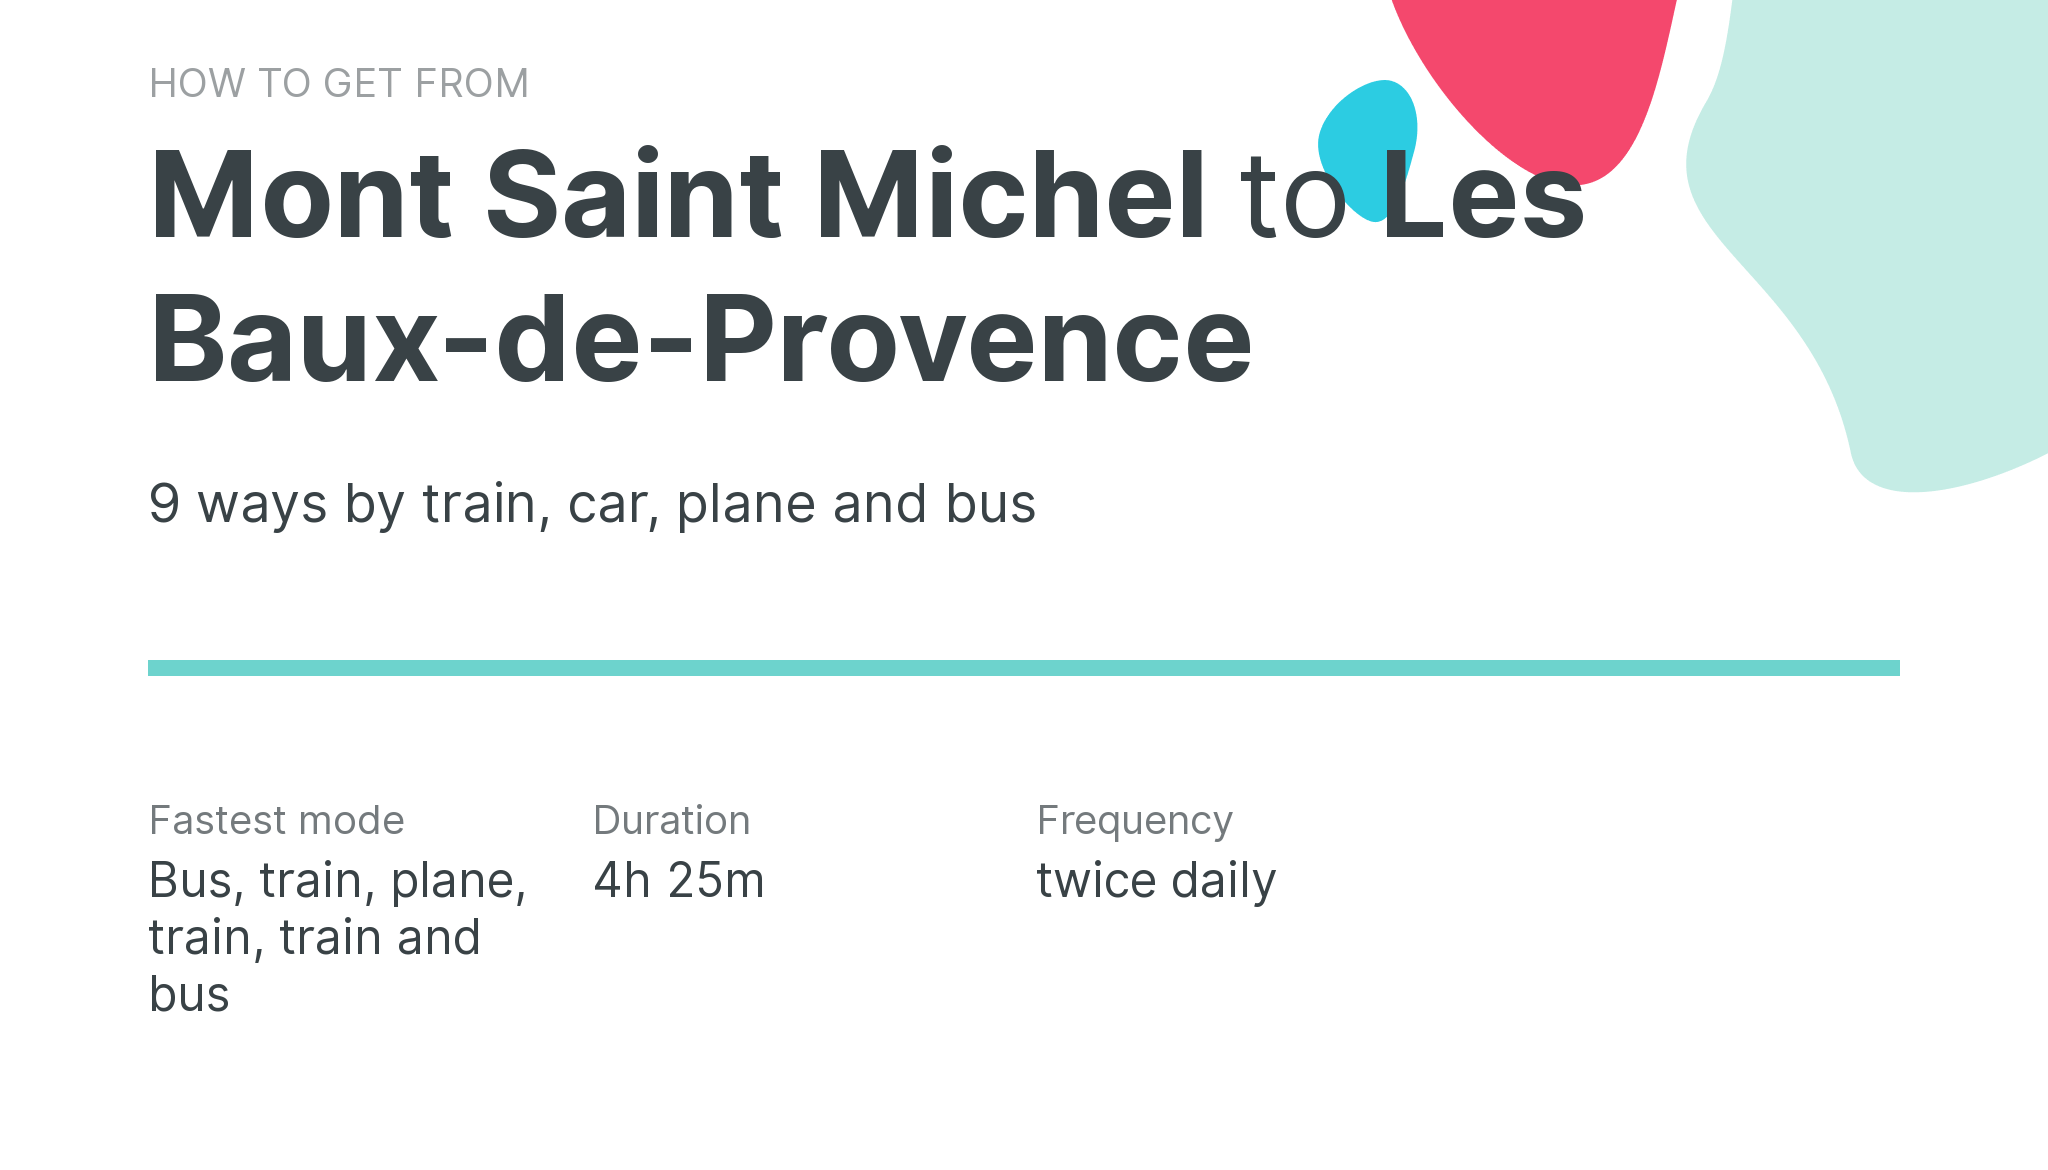 How do I get from Mont Saint Michel to Les Baux-de-Provence